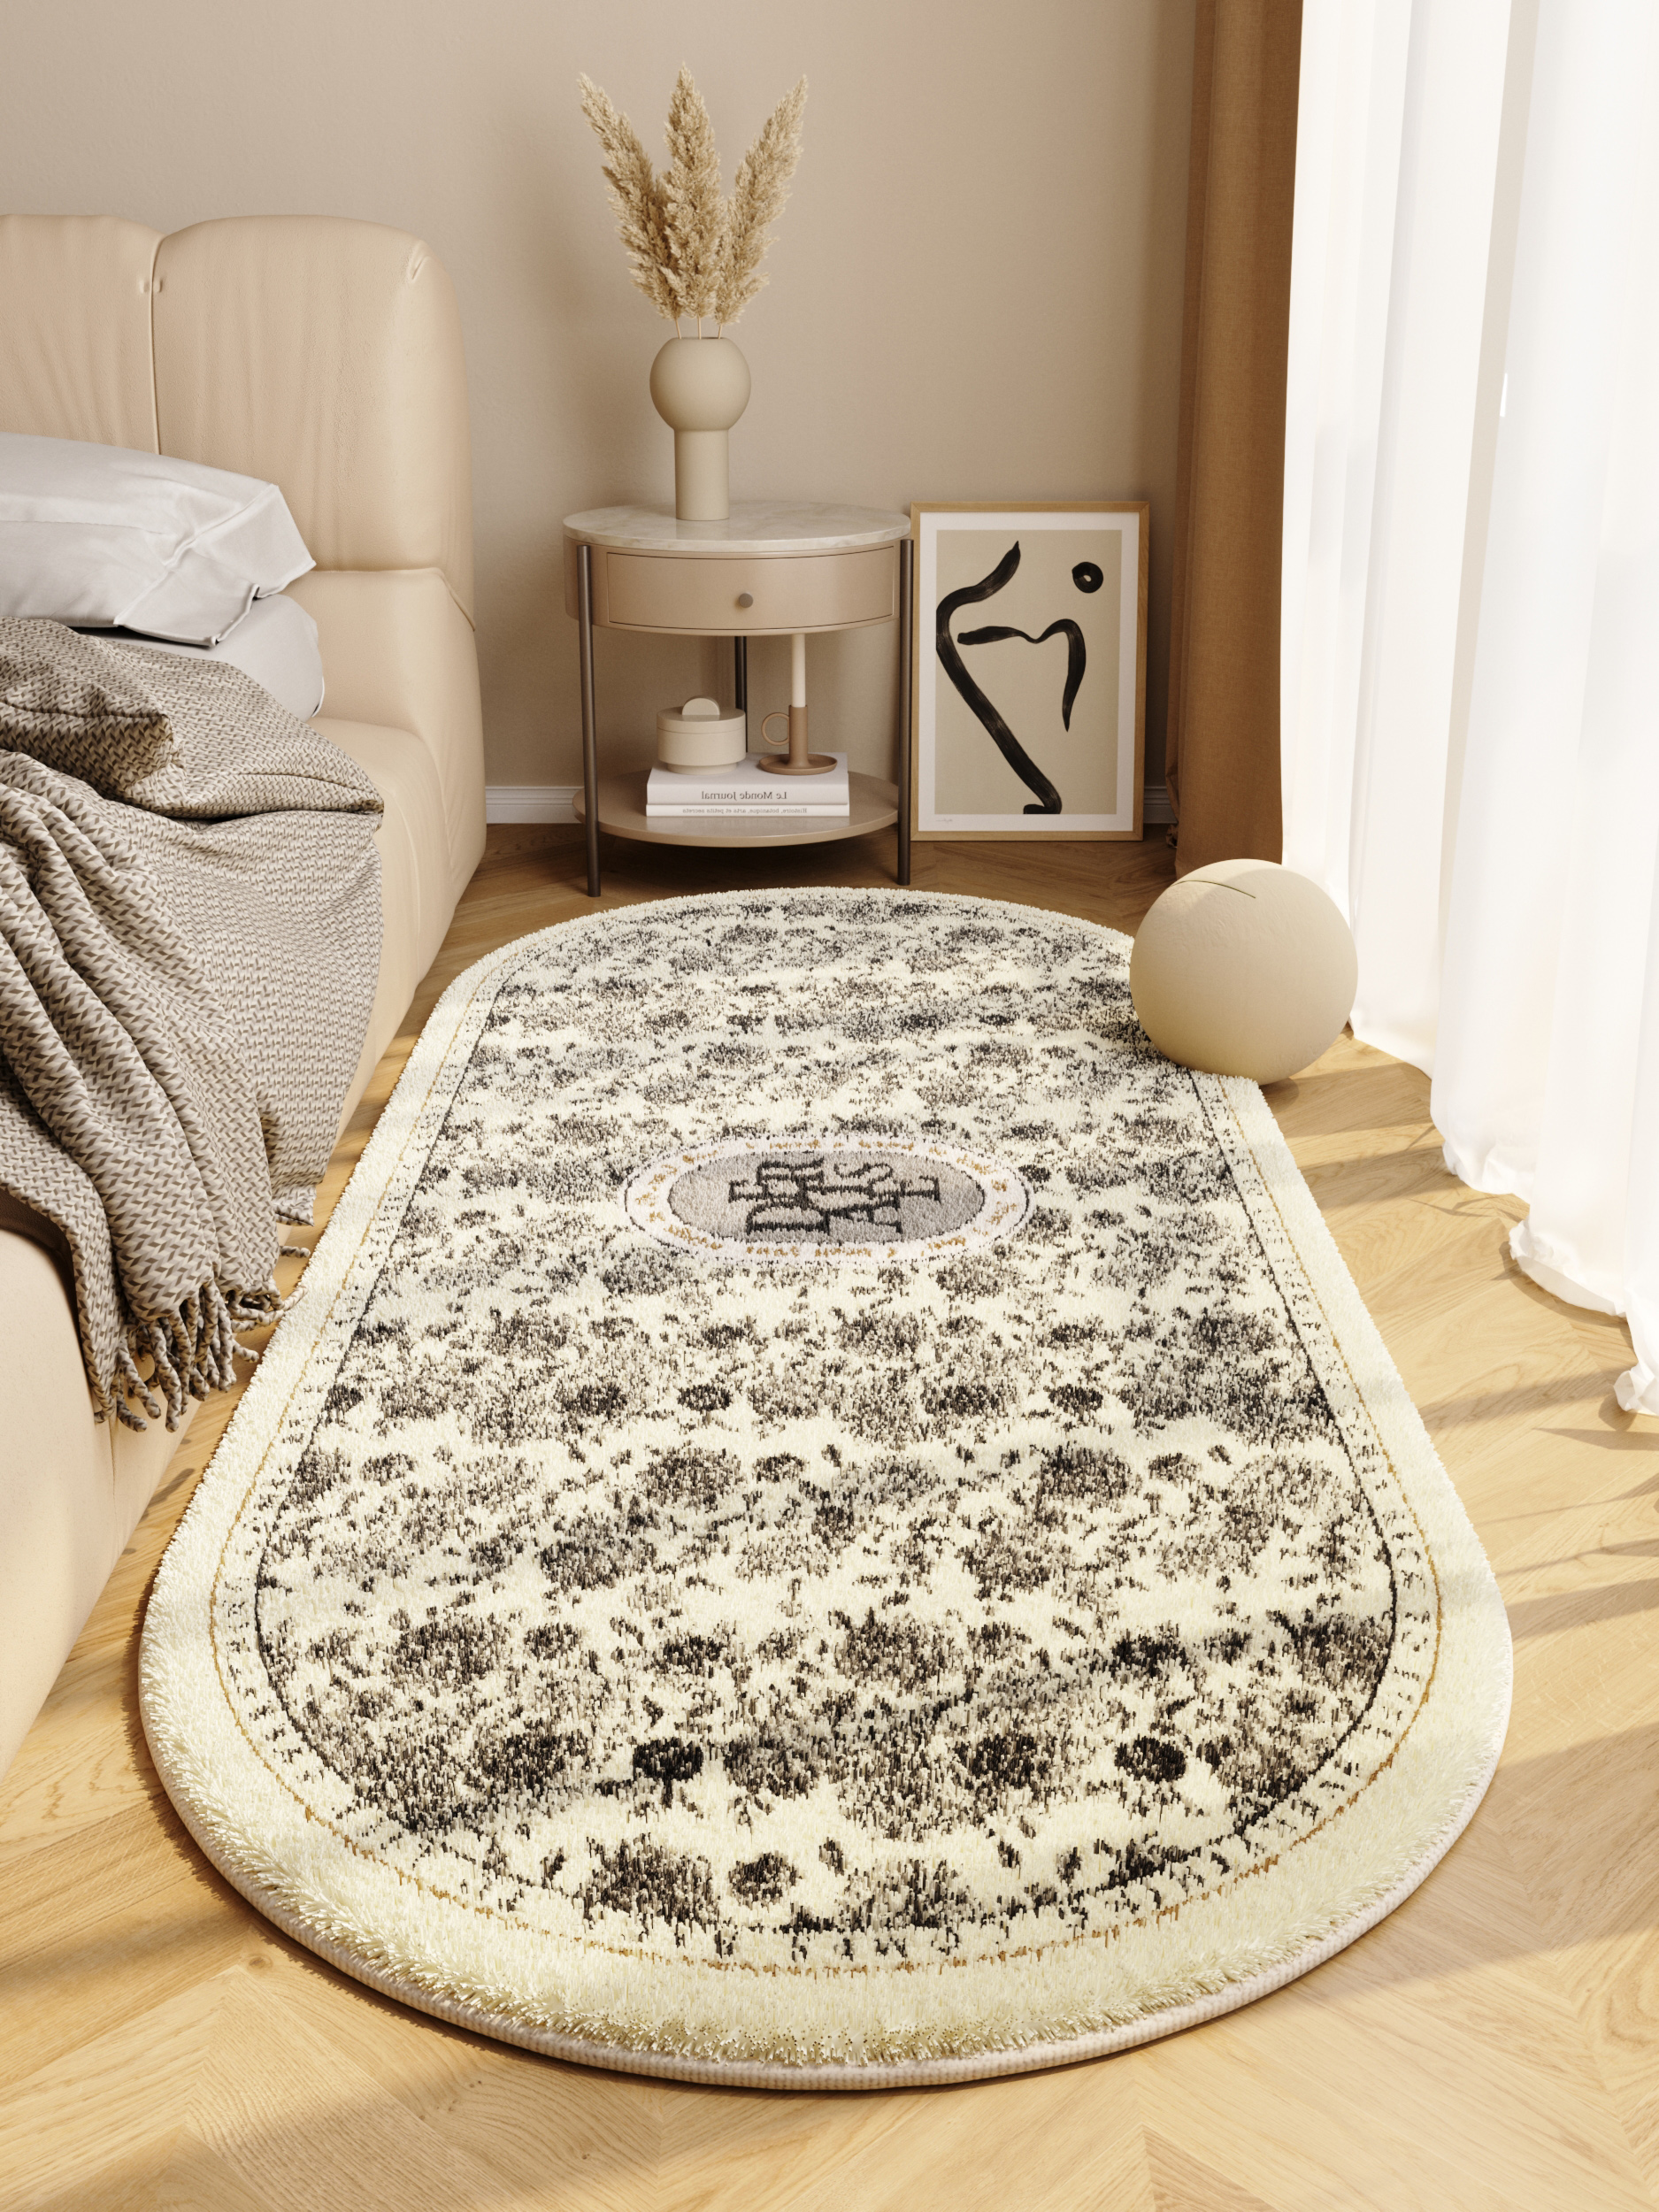 法式風格地毯 租房床前長條加厚法式地墊 給臥室高級感